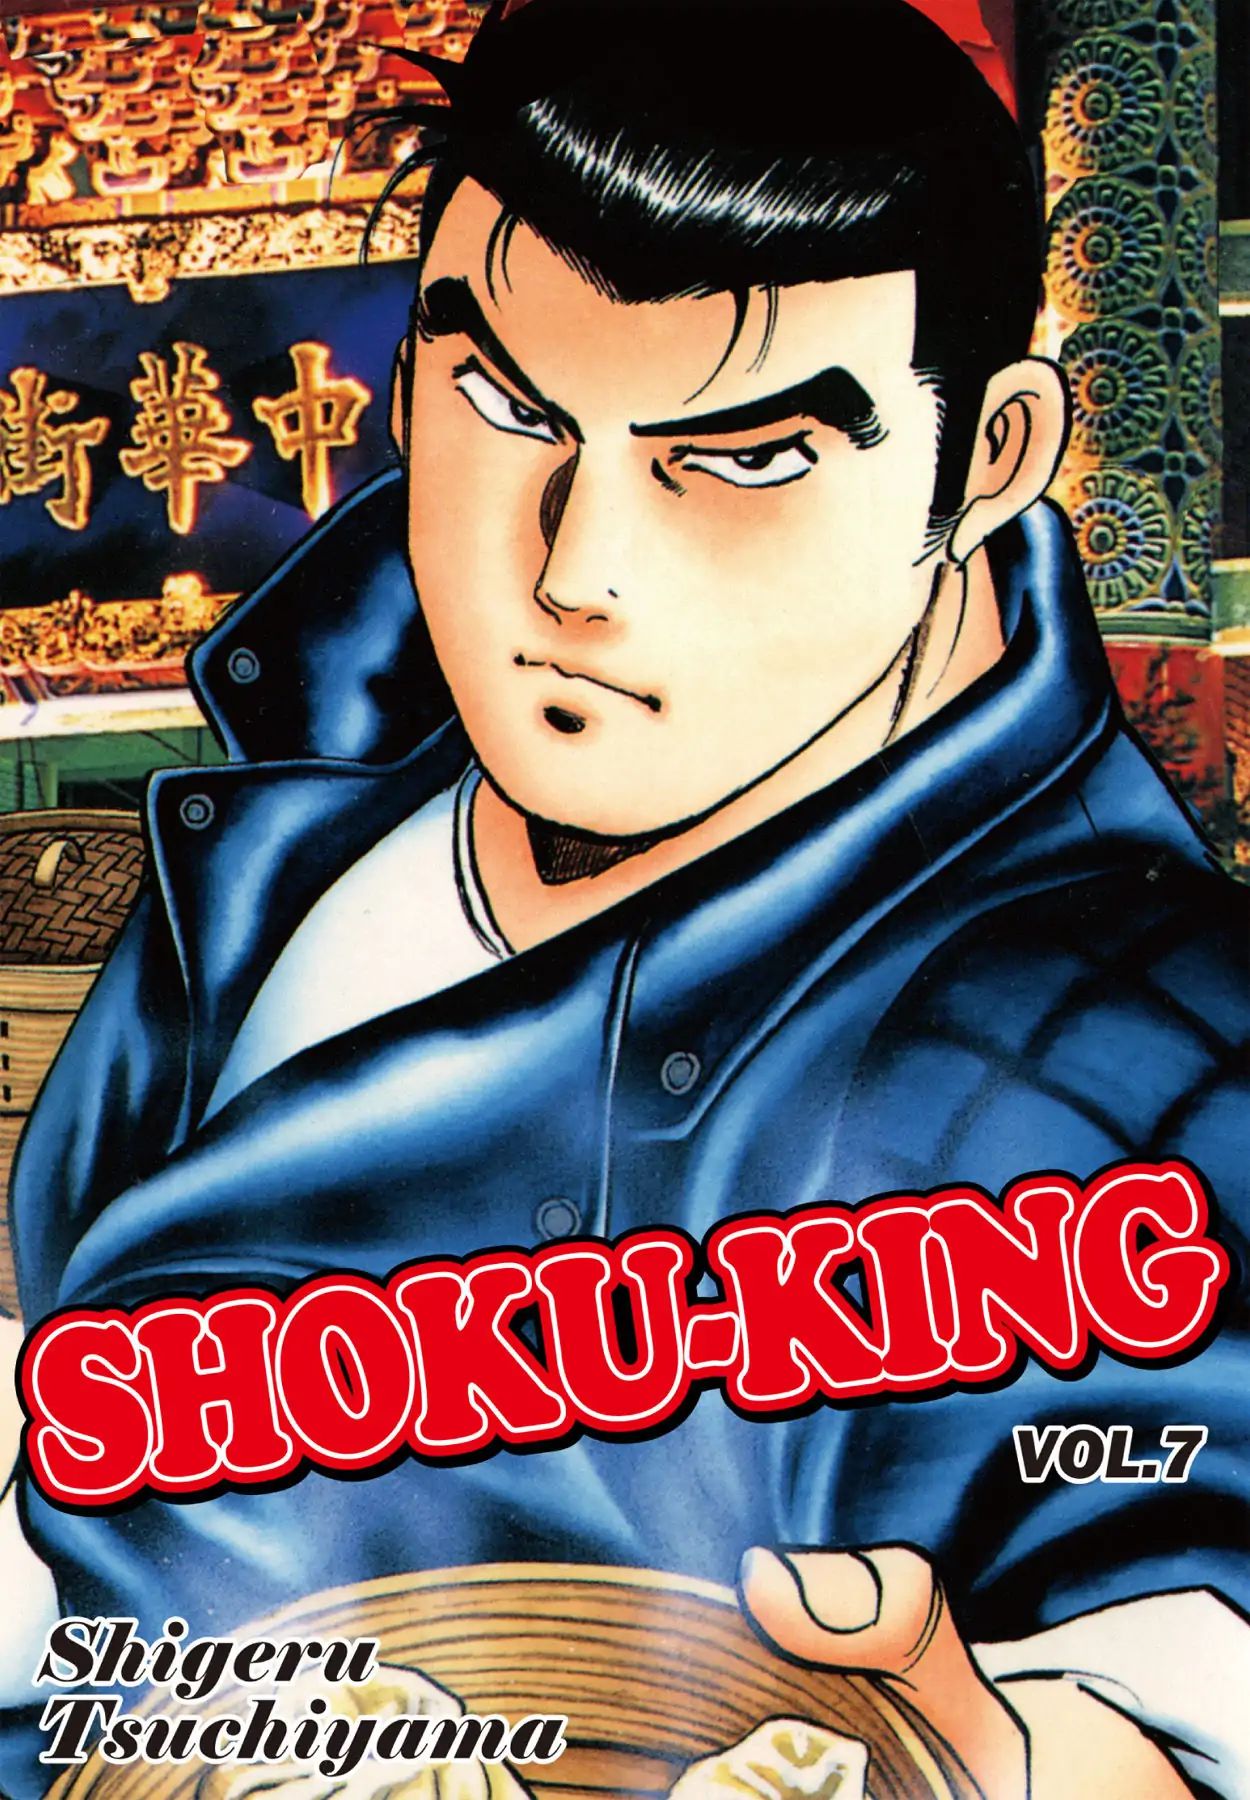 Shoku King VOL.7 CHAPTER 53: BONDS